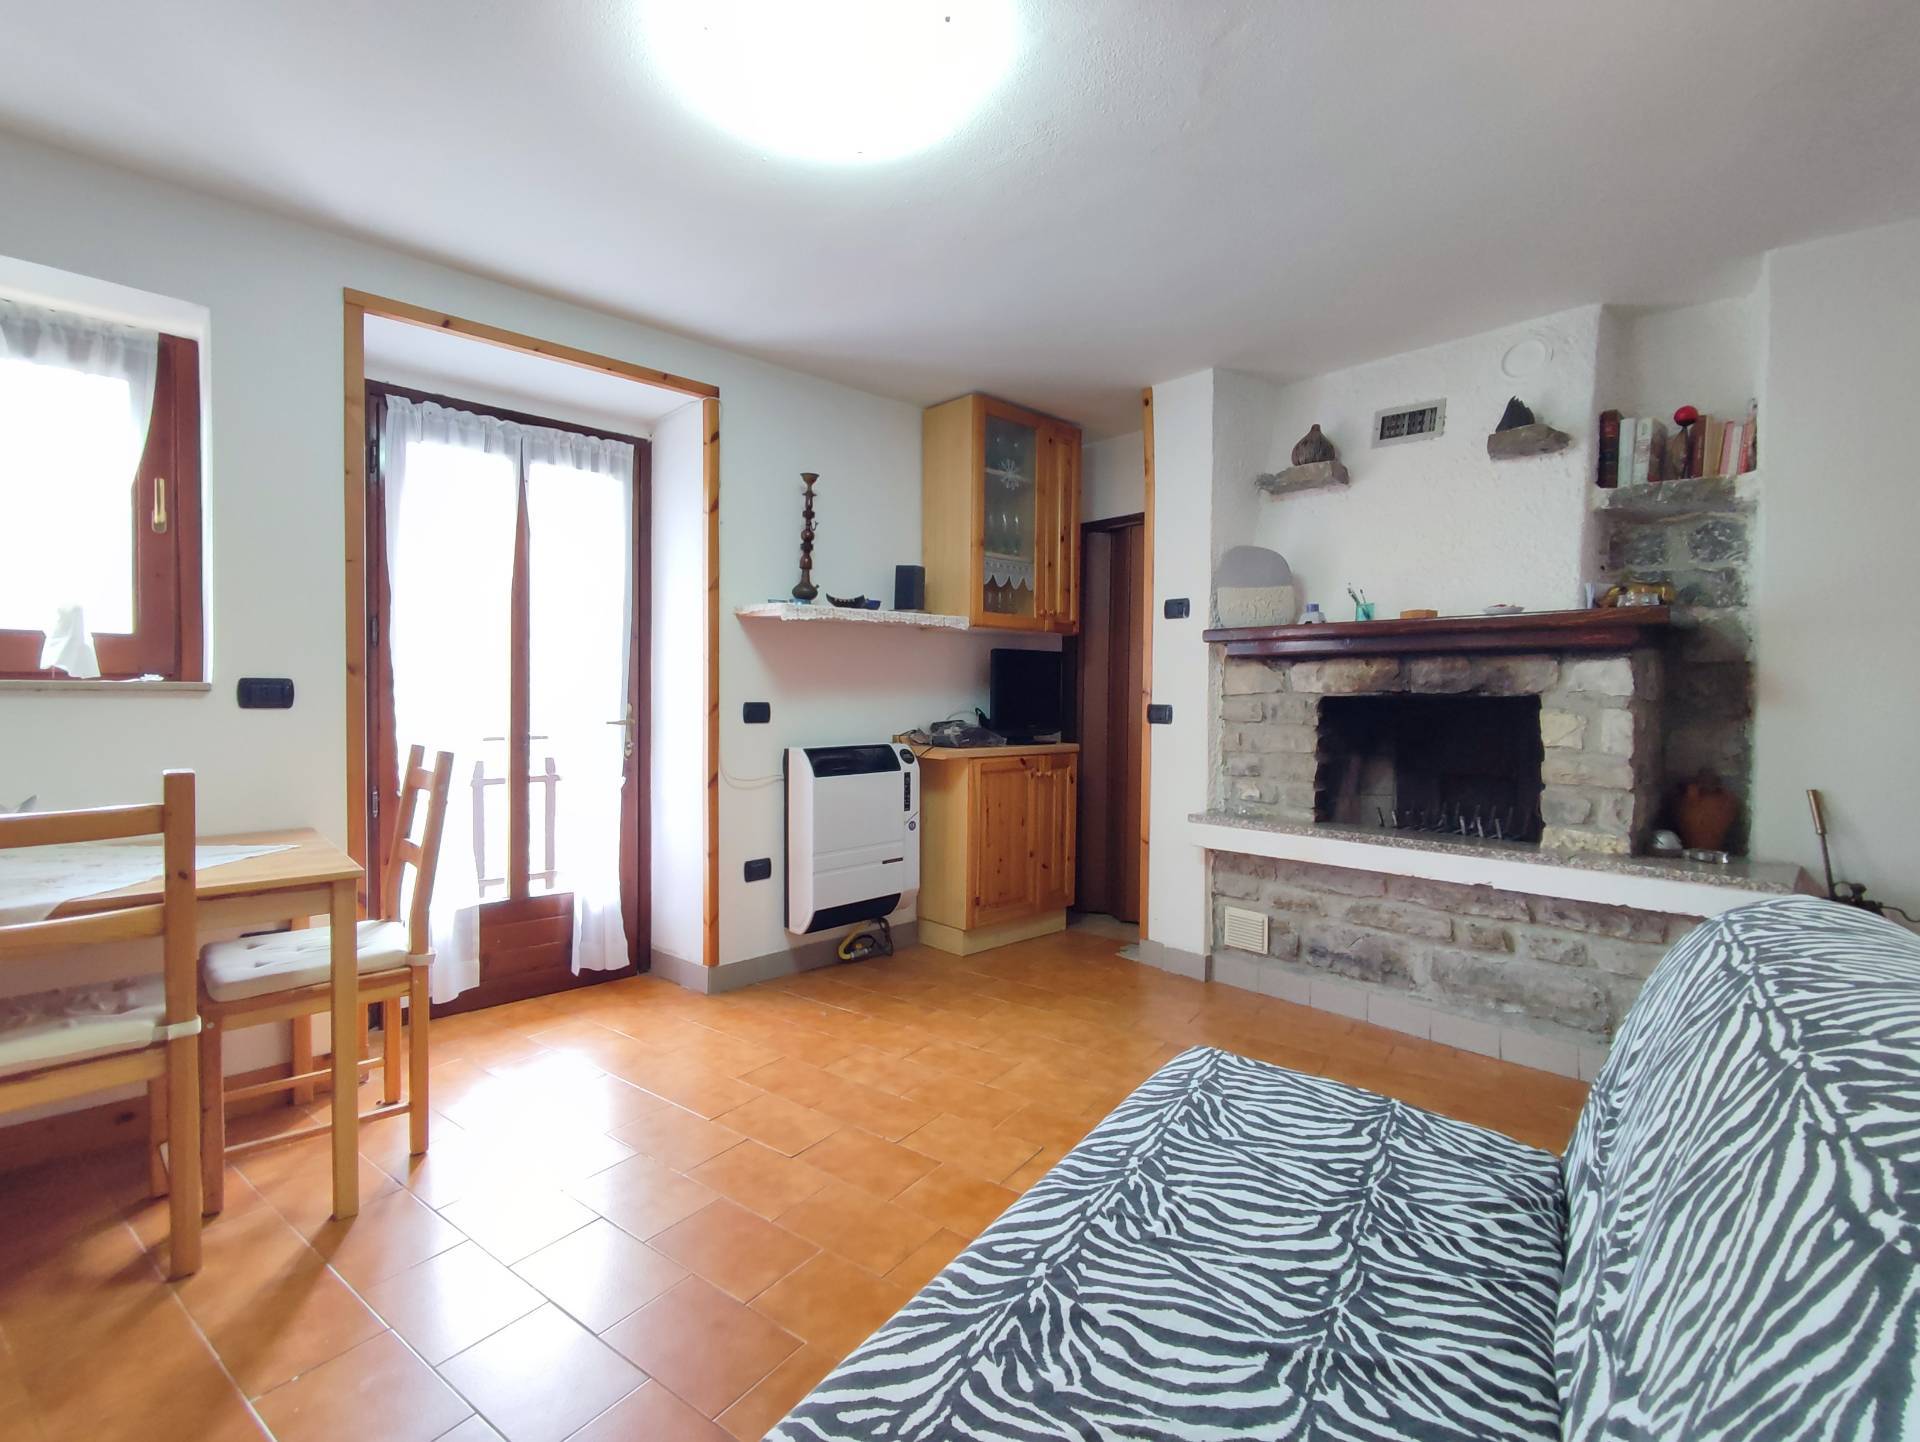 Appartamento in affitto a Adrara San Martino, 2 locali, prezzo € 450 | PortaleAgenzieImmobiliari.it